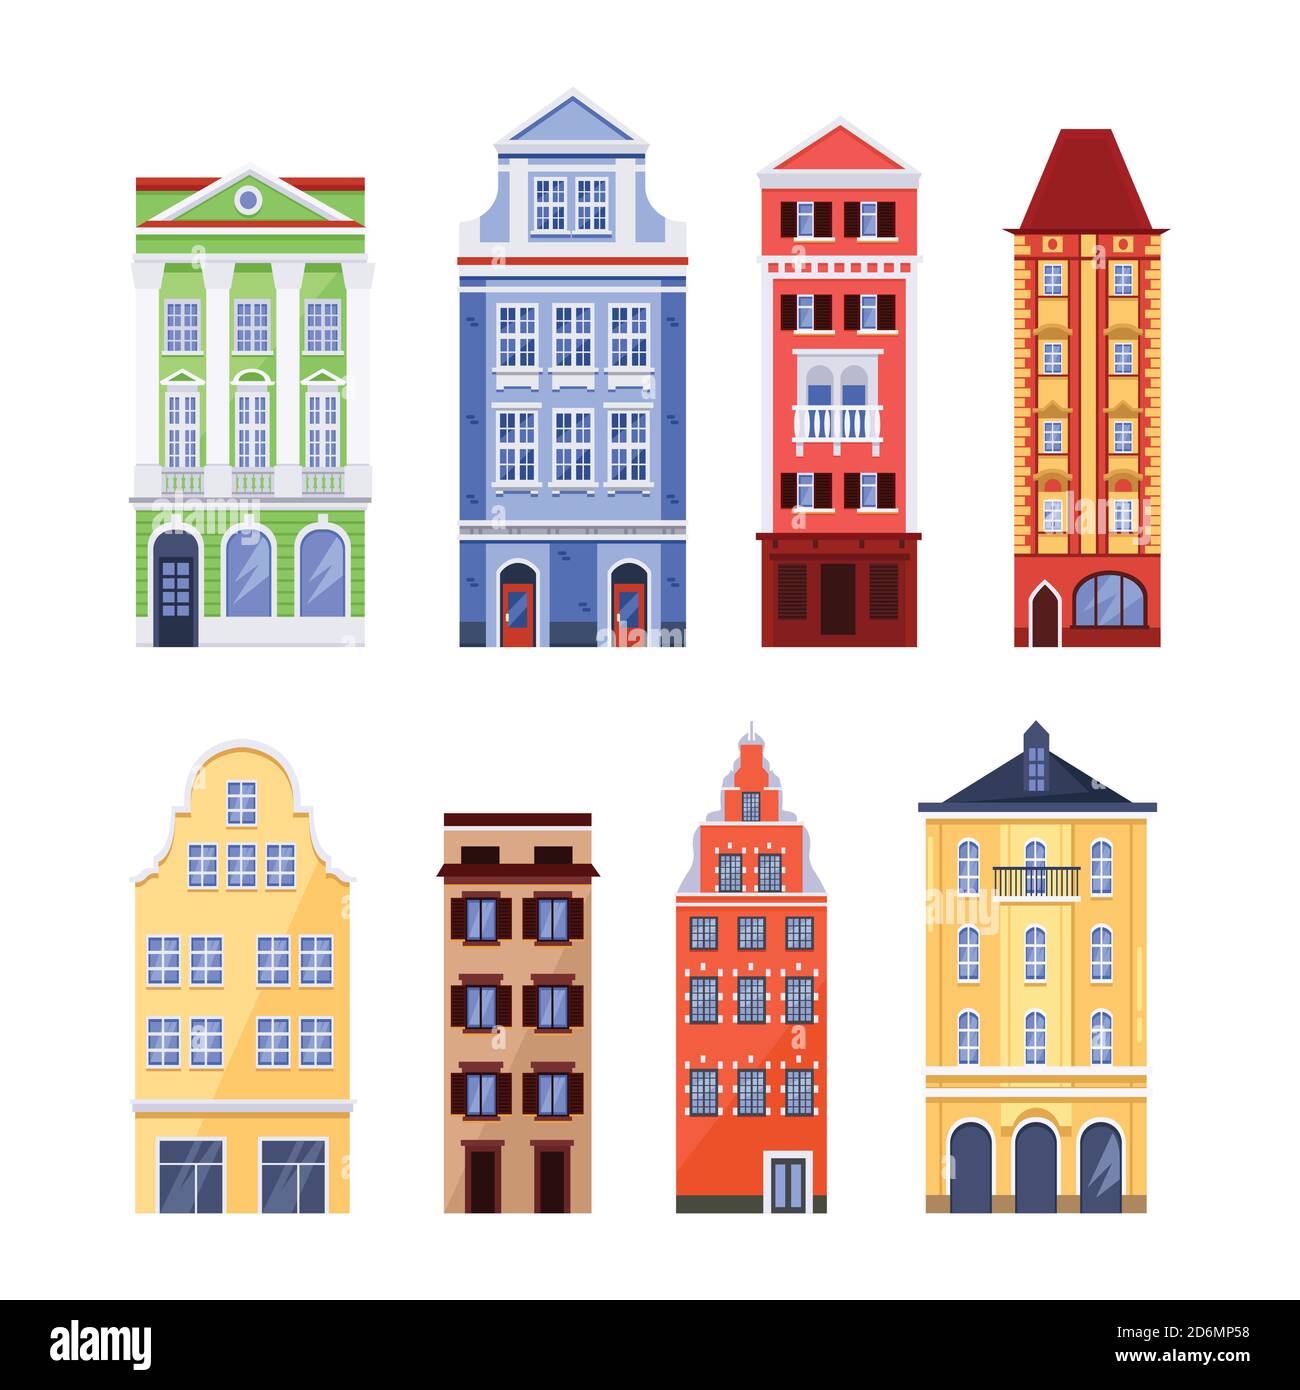 Alte bunte Gebäude, Vektor flach isoliert Illustration. Europäische traditionelle Hausfassaden. Design-Elemente der Stadtarchitektur. Stock Vektor